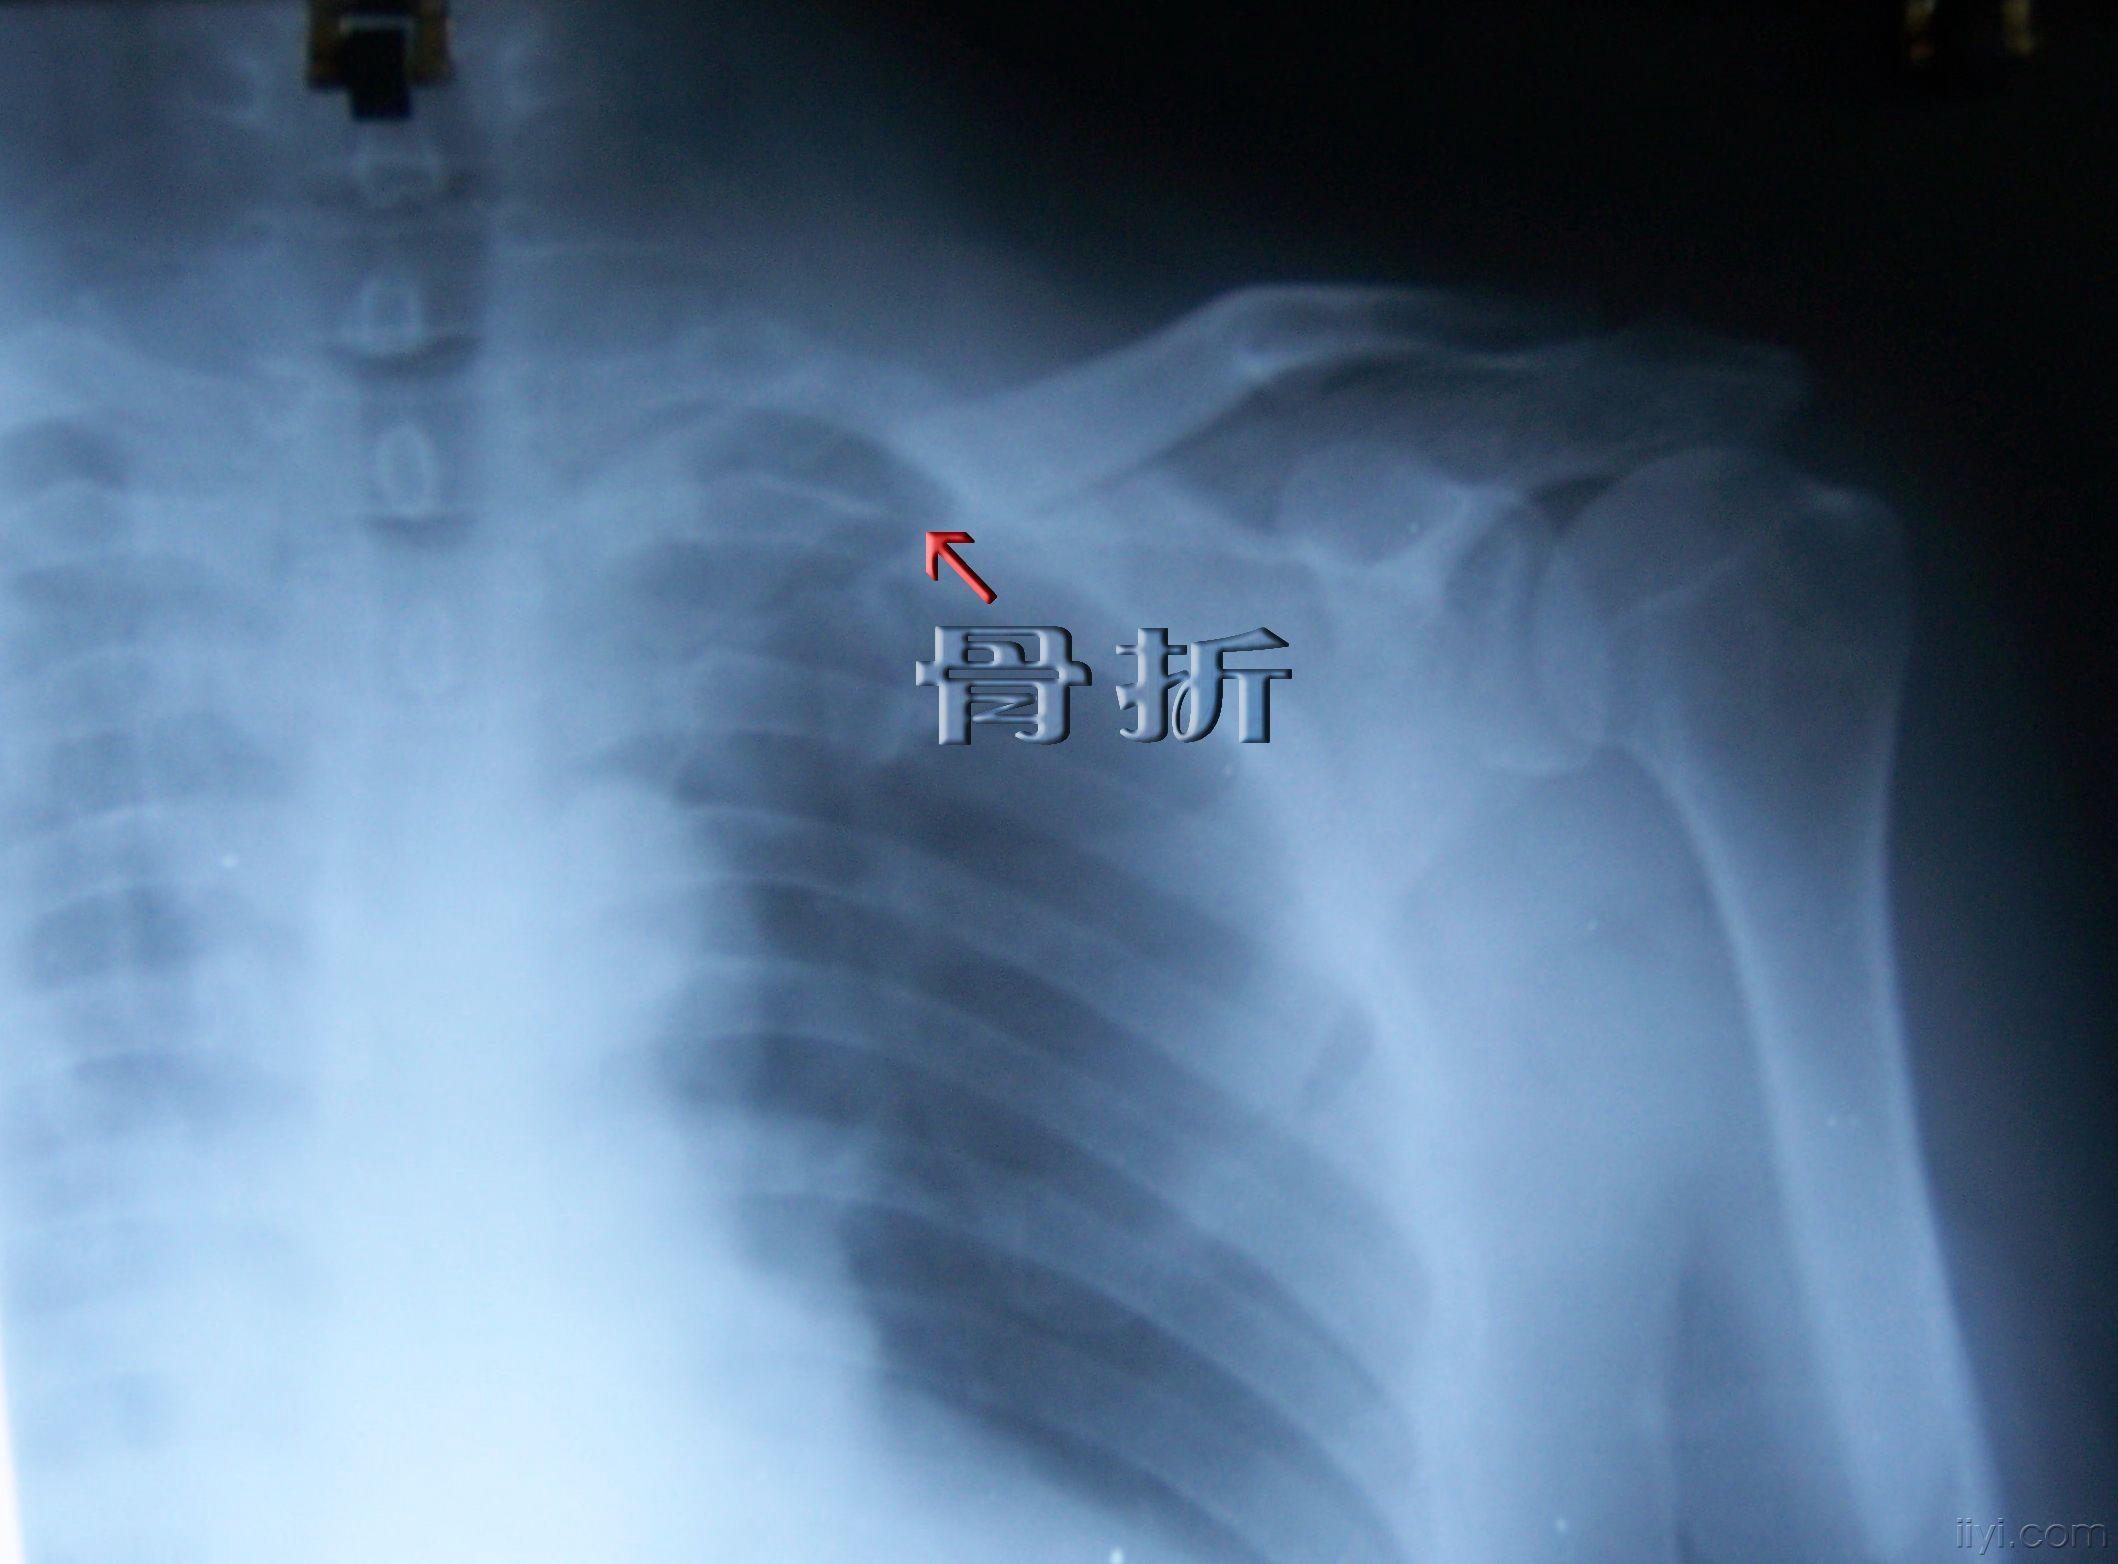 楼主chaoyang-wy2008-10-01 11:48:09患者女性,61岁,因摔伤致左锁骨近